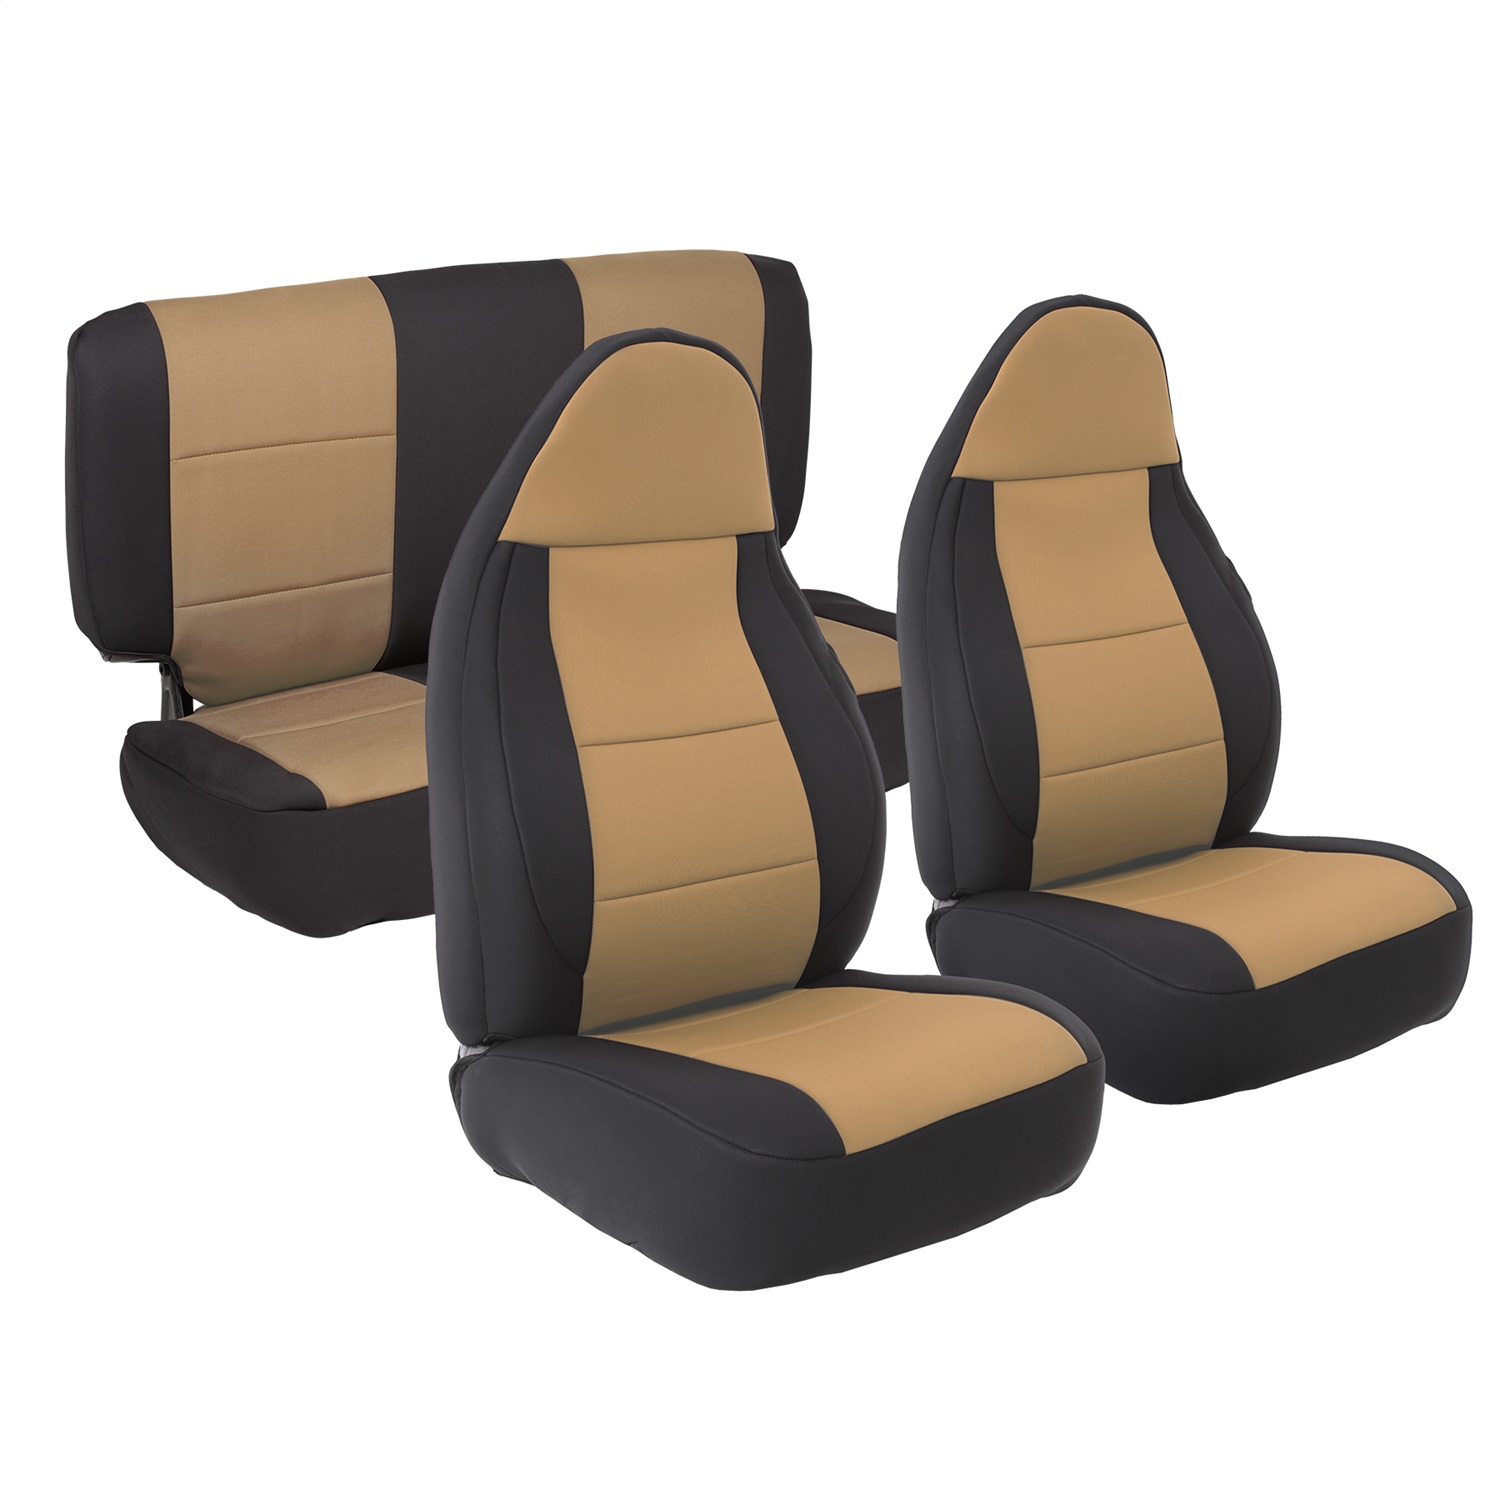 Smittybilt 471225 Neoprene Seat Cover Fits 97-02 Wrangler (TJ)